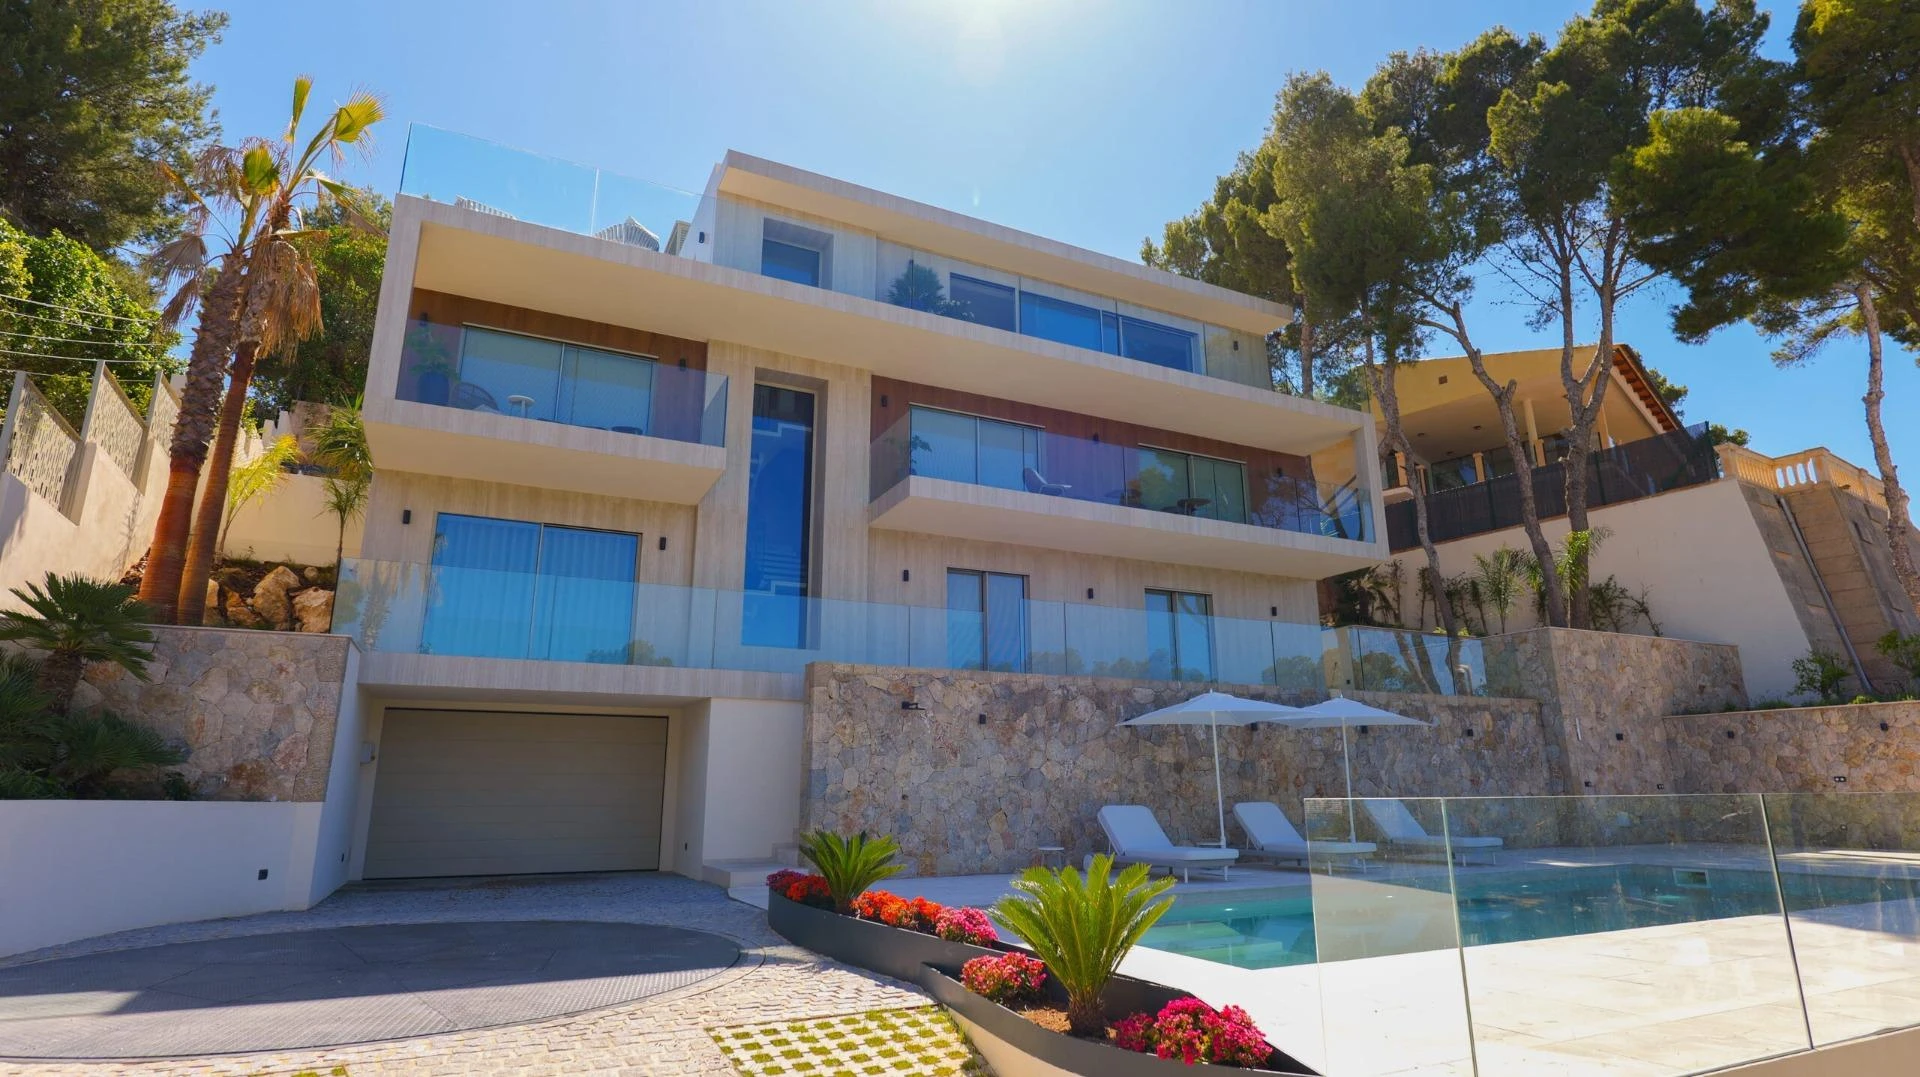 Excelente diseño moderno con increíbles vistas al mar en esta gran villa nueva en Santa Ponsa